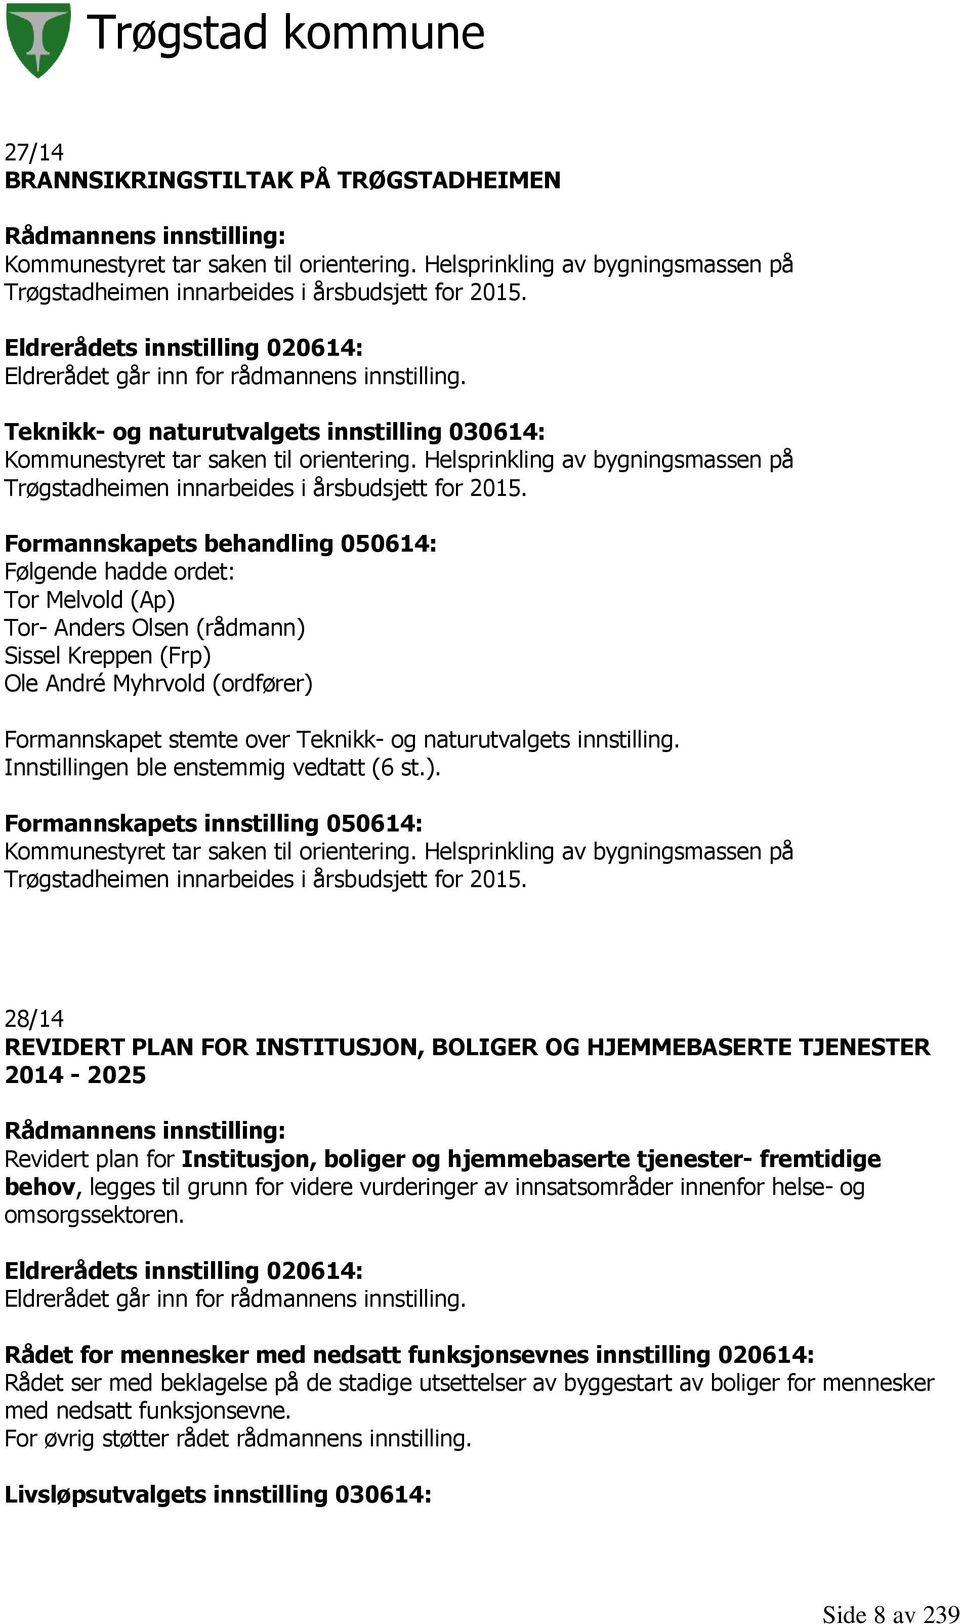 Helsprinkling av bygningsmassen på Trøgstadheimen innarbeides i årsbudsjett for 2015.